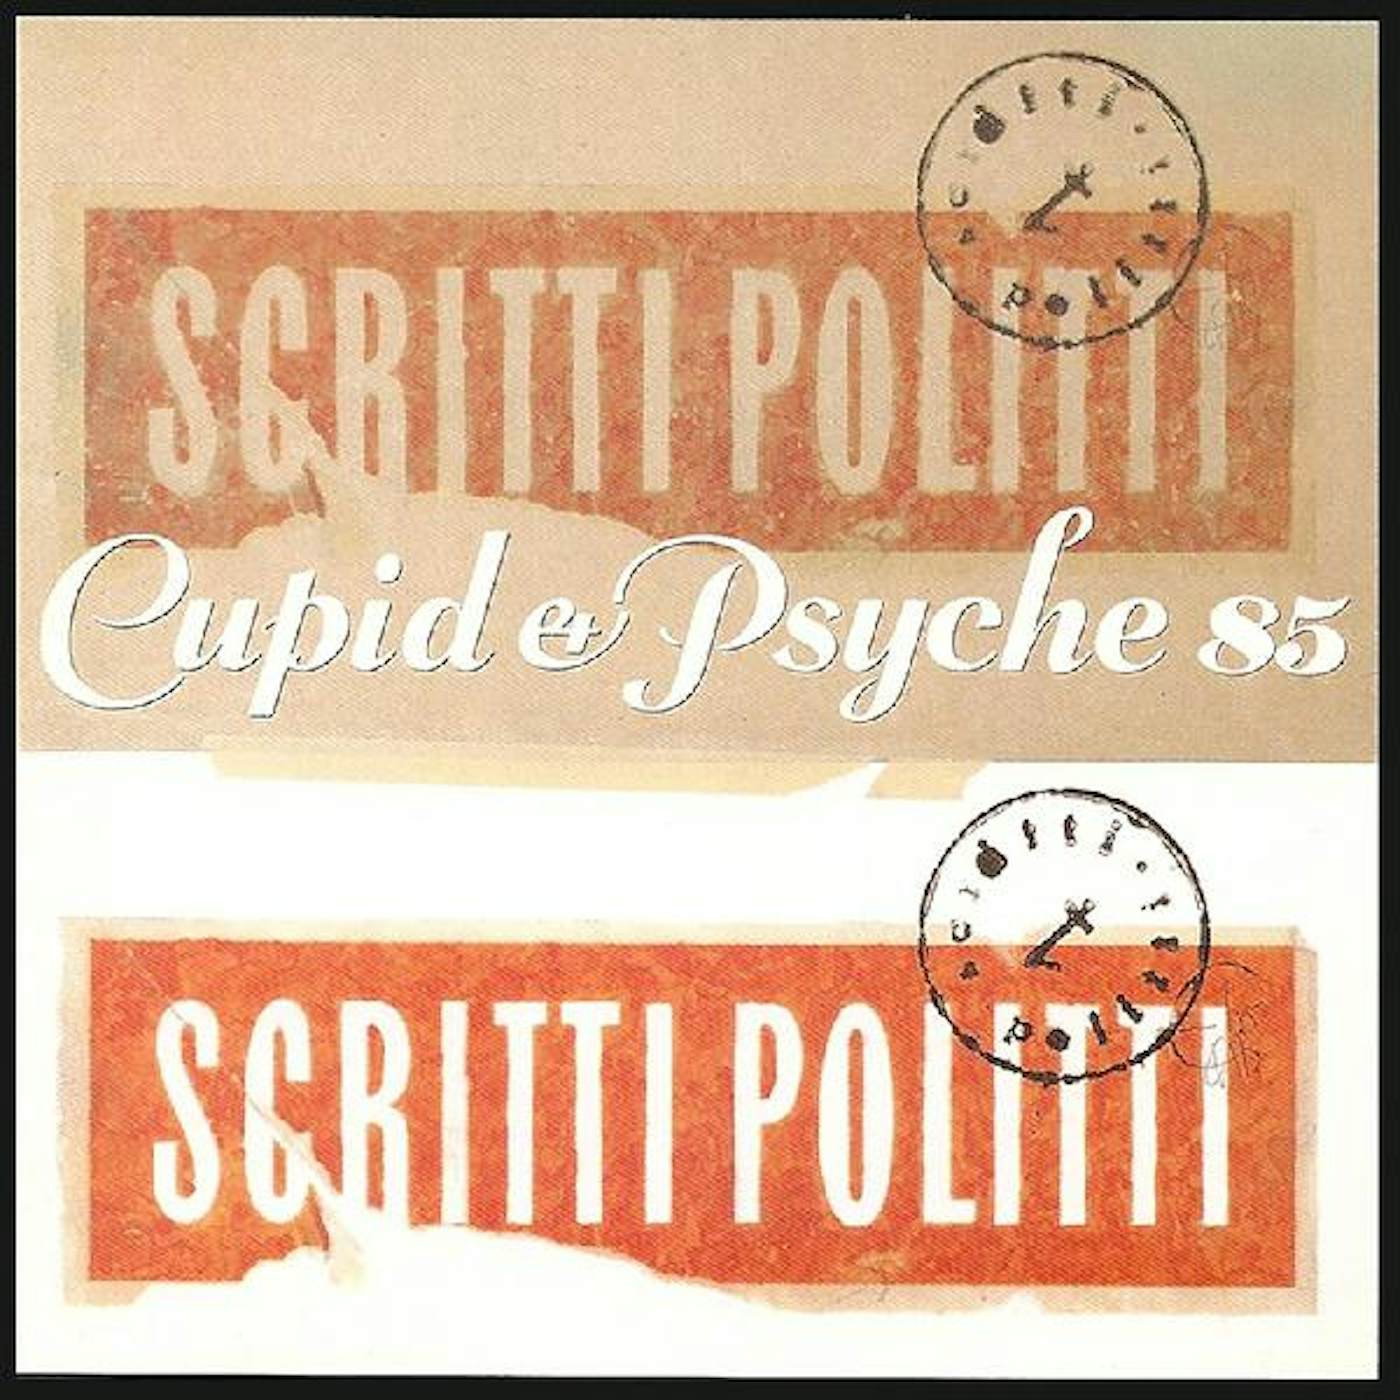 Scritti Politti Cupid & Psyche 85 Vinyl Record